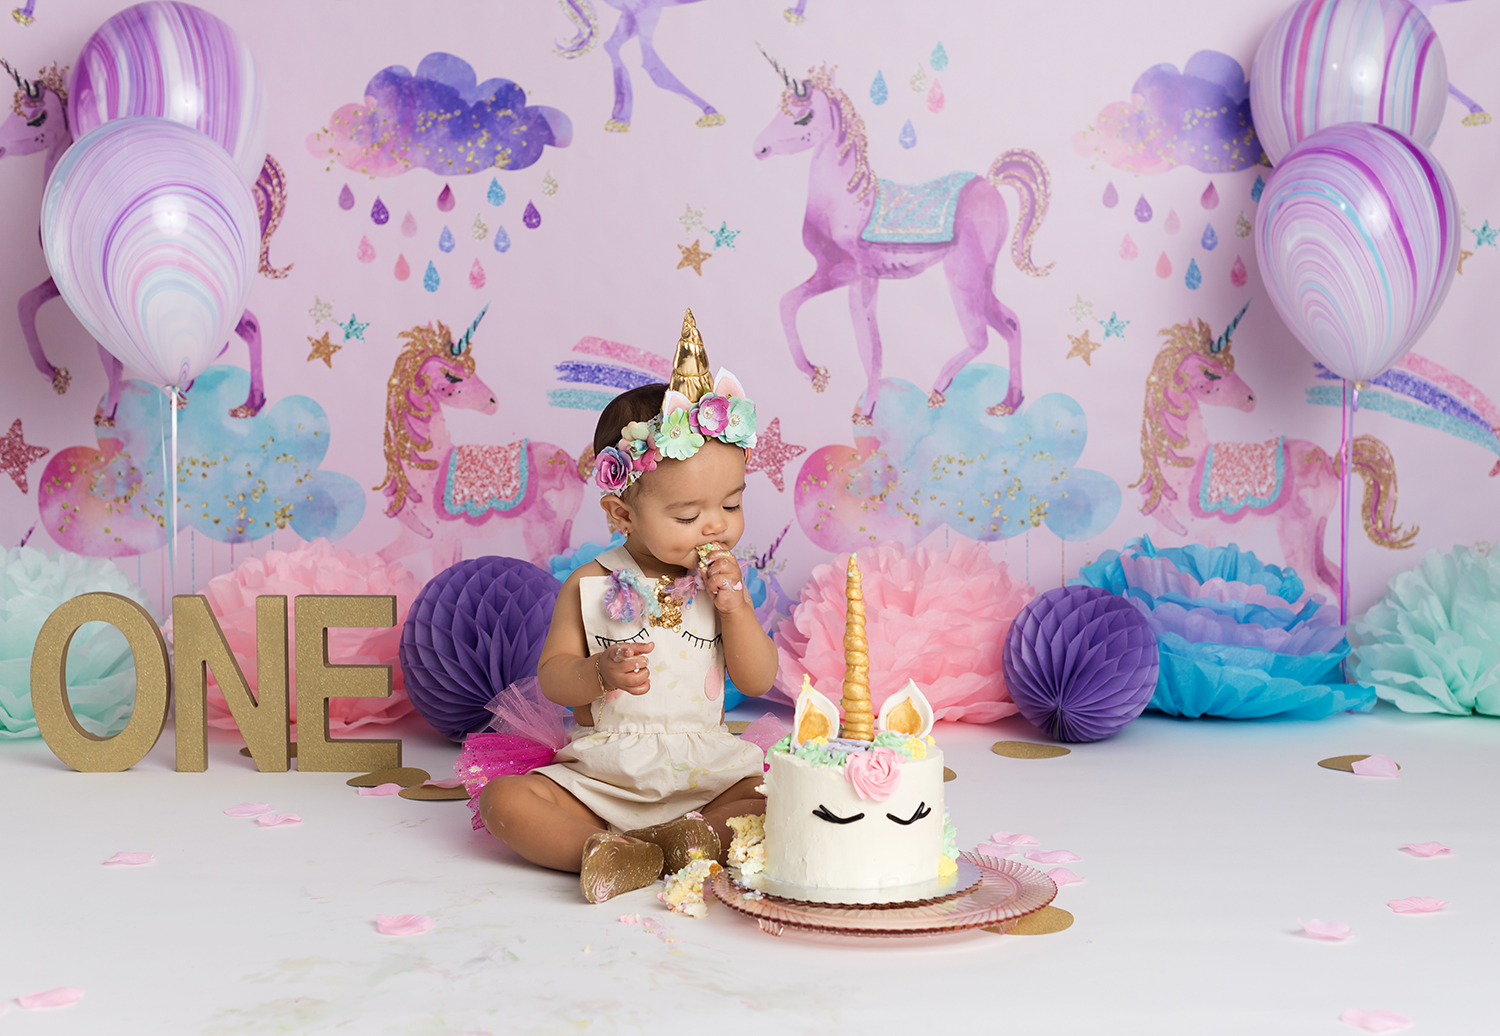 studio first birthday cake smash of baby girl and unicorn theme setup